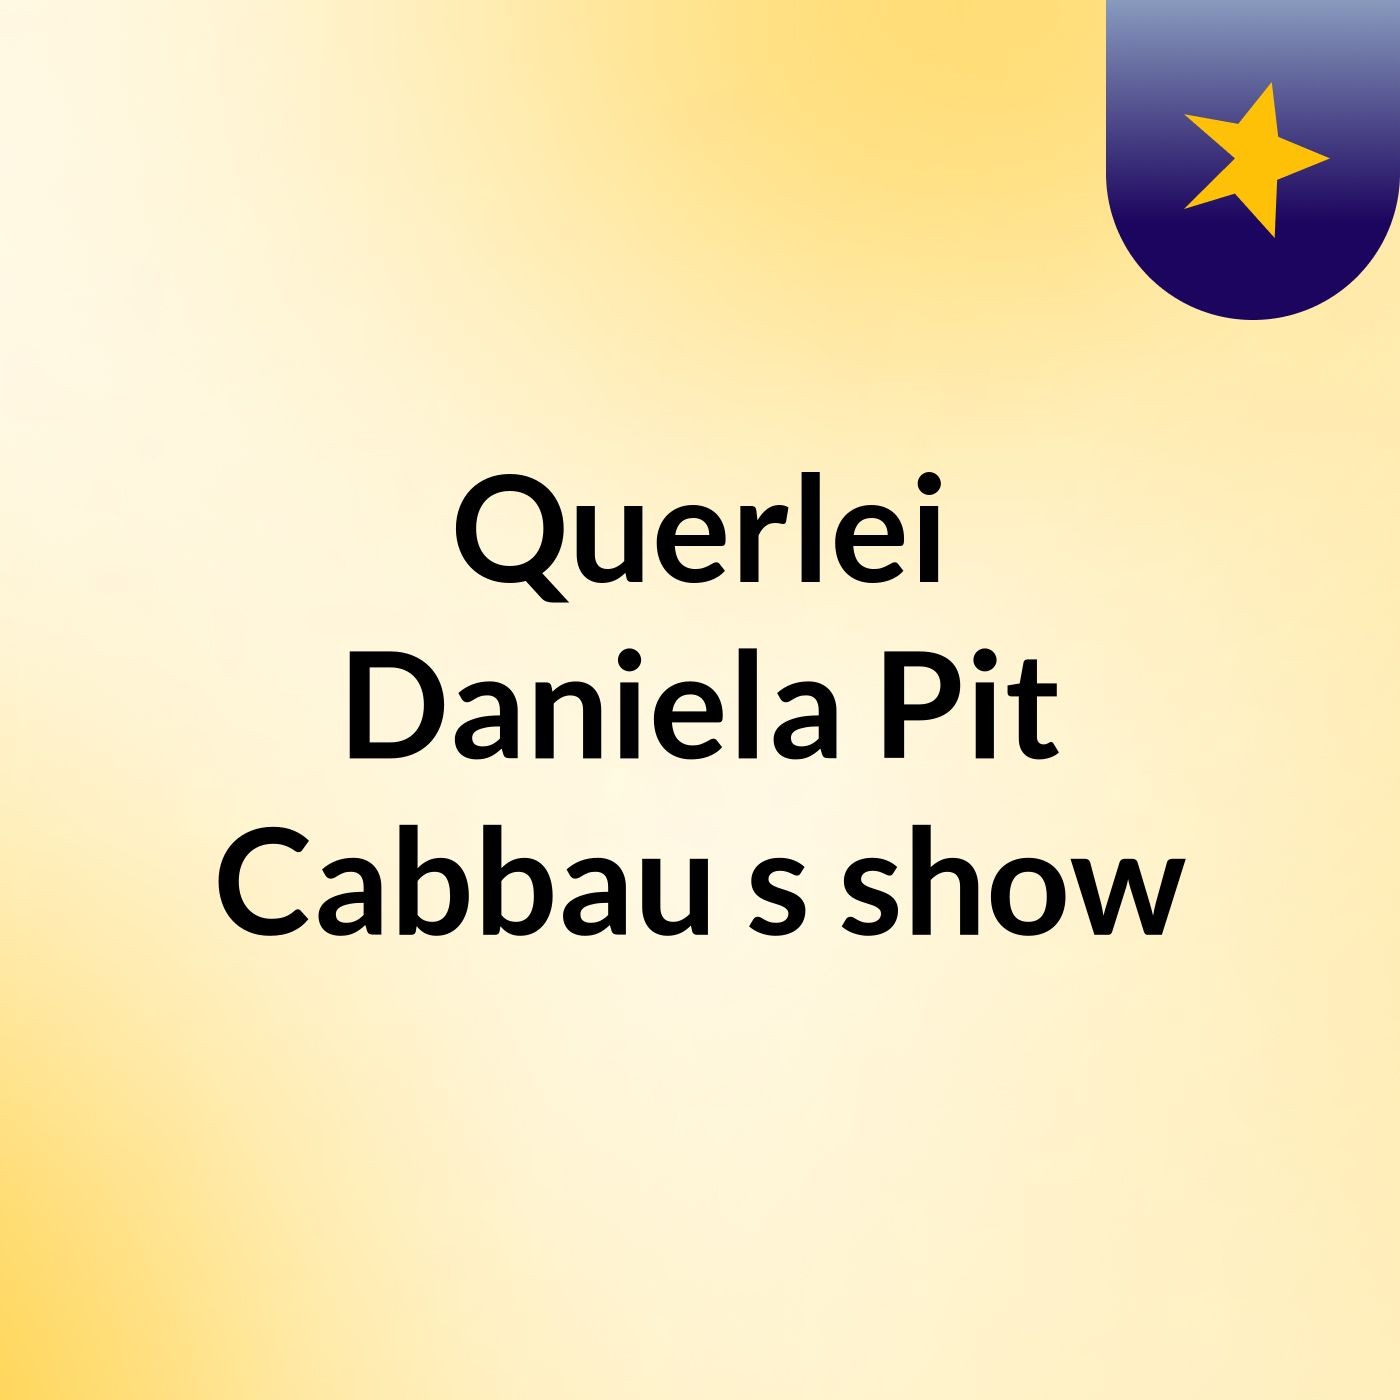 Querlei Daniela Pit Cabbau's show